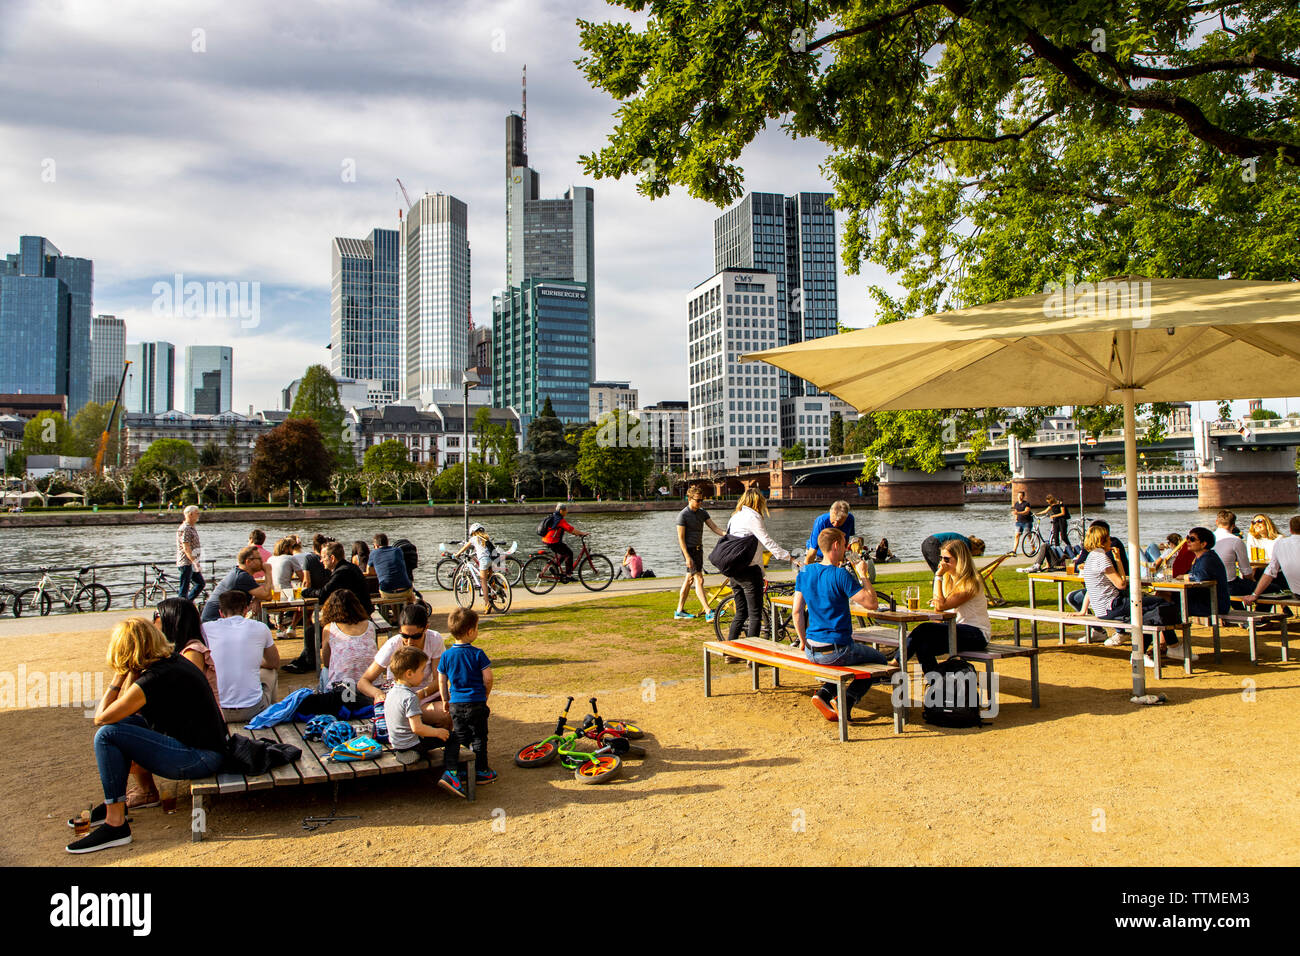 Frankfurt am Main, Blick auf die Skyline der Innenstadt, vom Linken Mainufer, Uferweg, Biergarten, Leute chillen am Ufer, Foto de stock